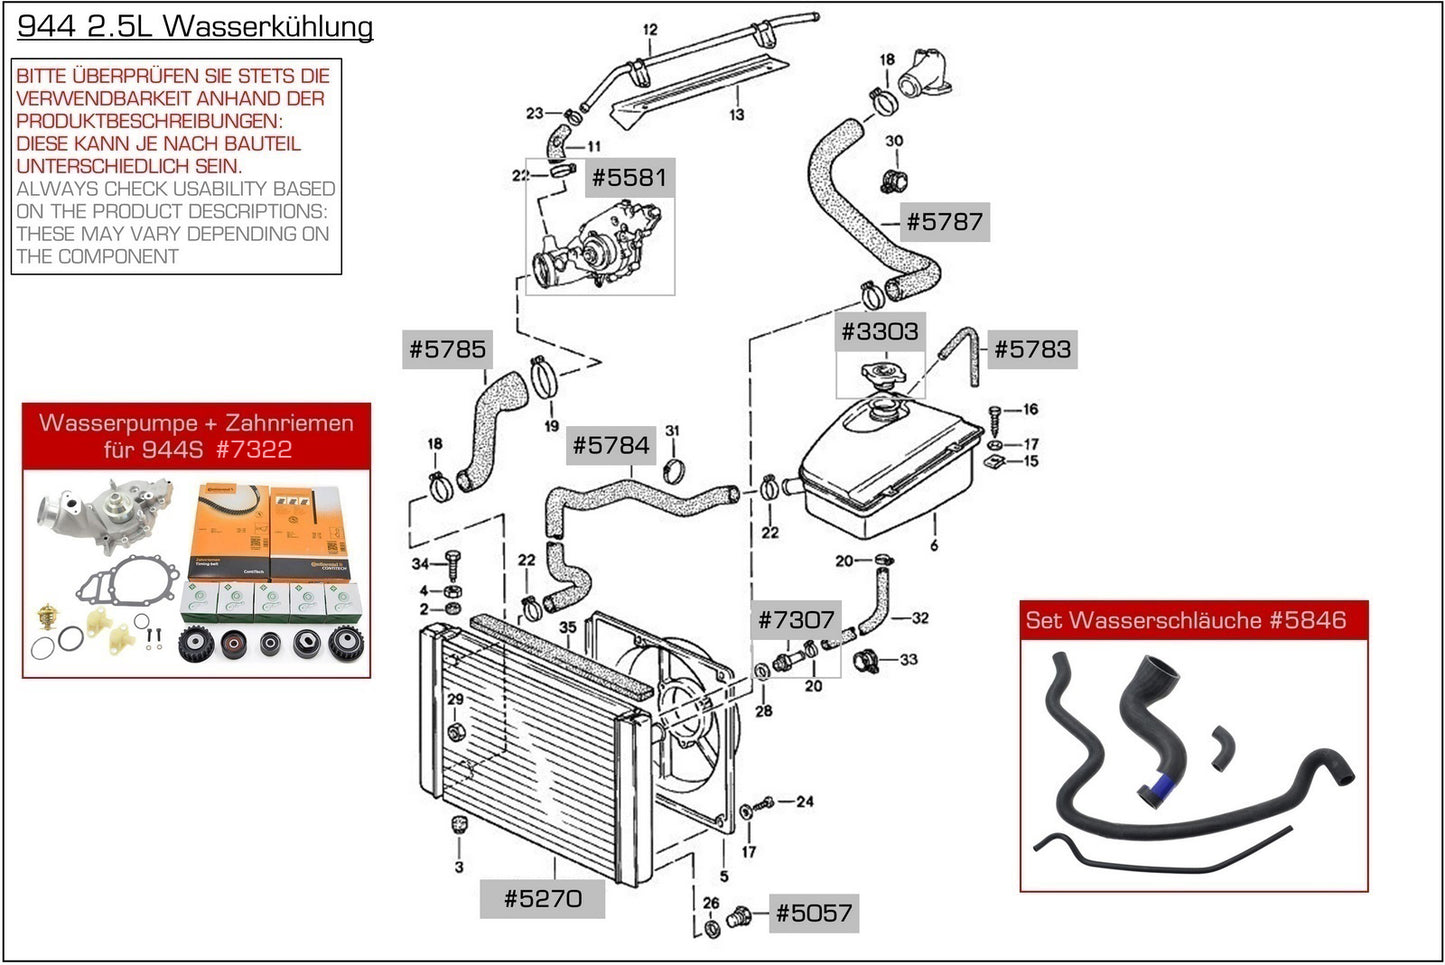 Tubo del radiatore per radiatore Porsche 944 '82-85 al serbatoio SOPRA